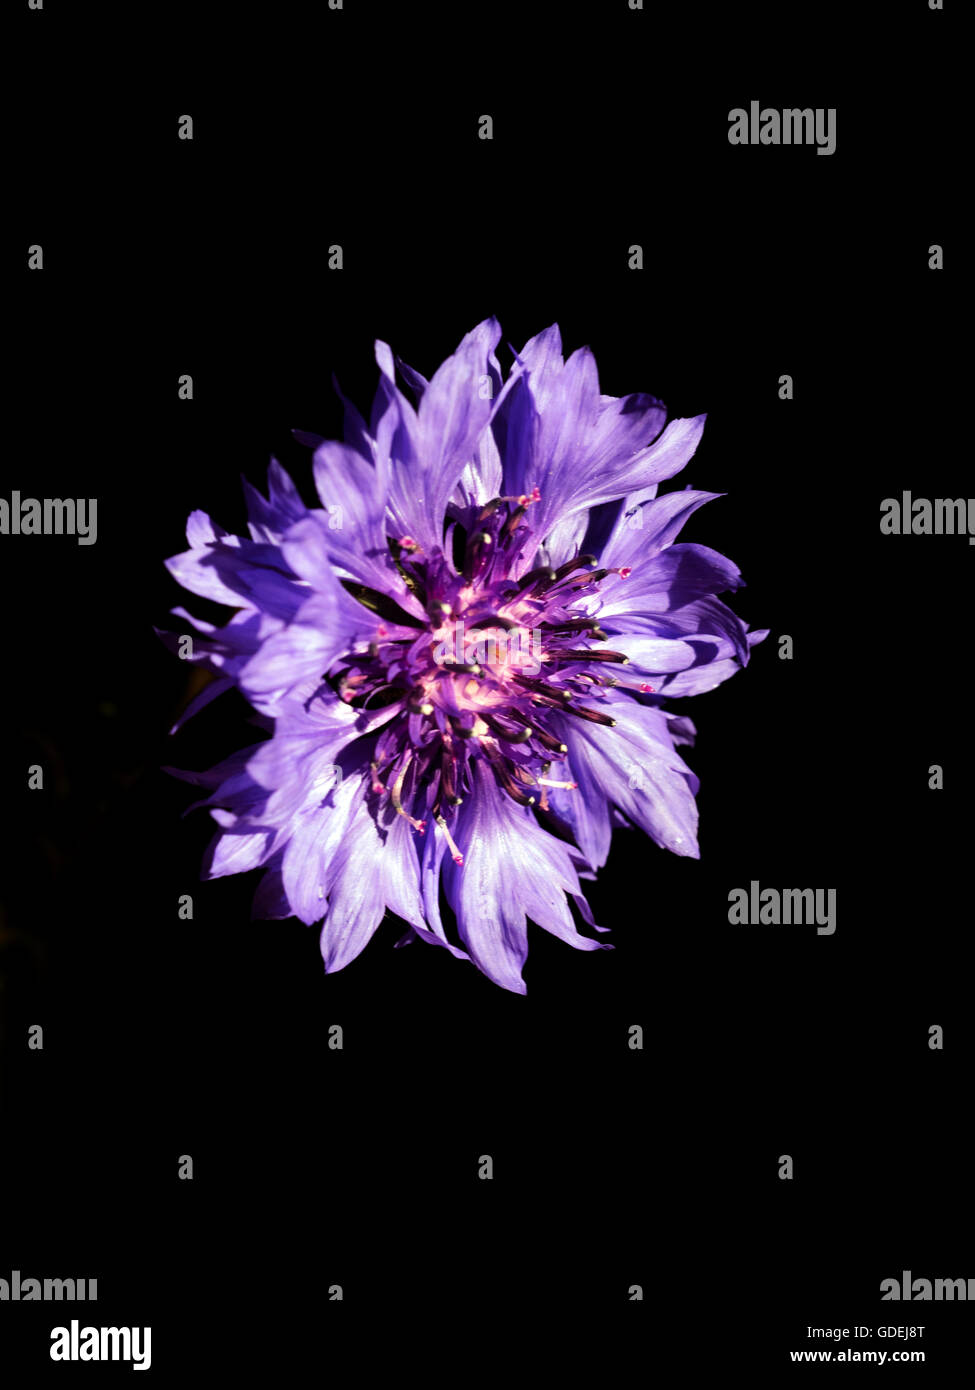 Purple cornflower (Centaurea) flower head against black background Stock Photo